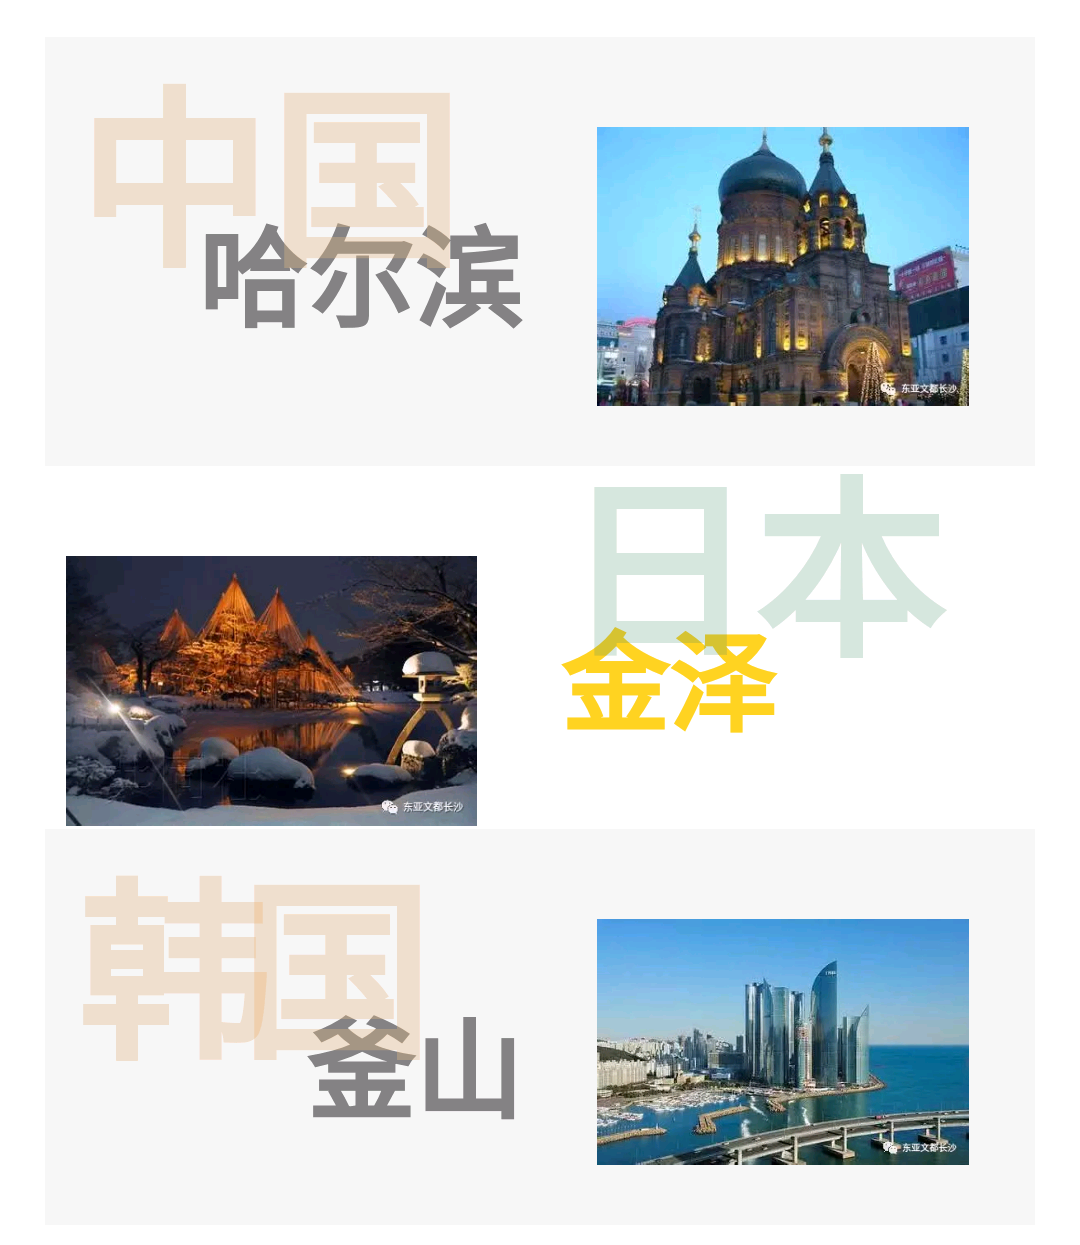 哈尔滨当选2018年东亚文化之都 - 中华人民共